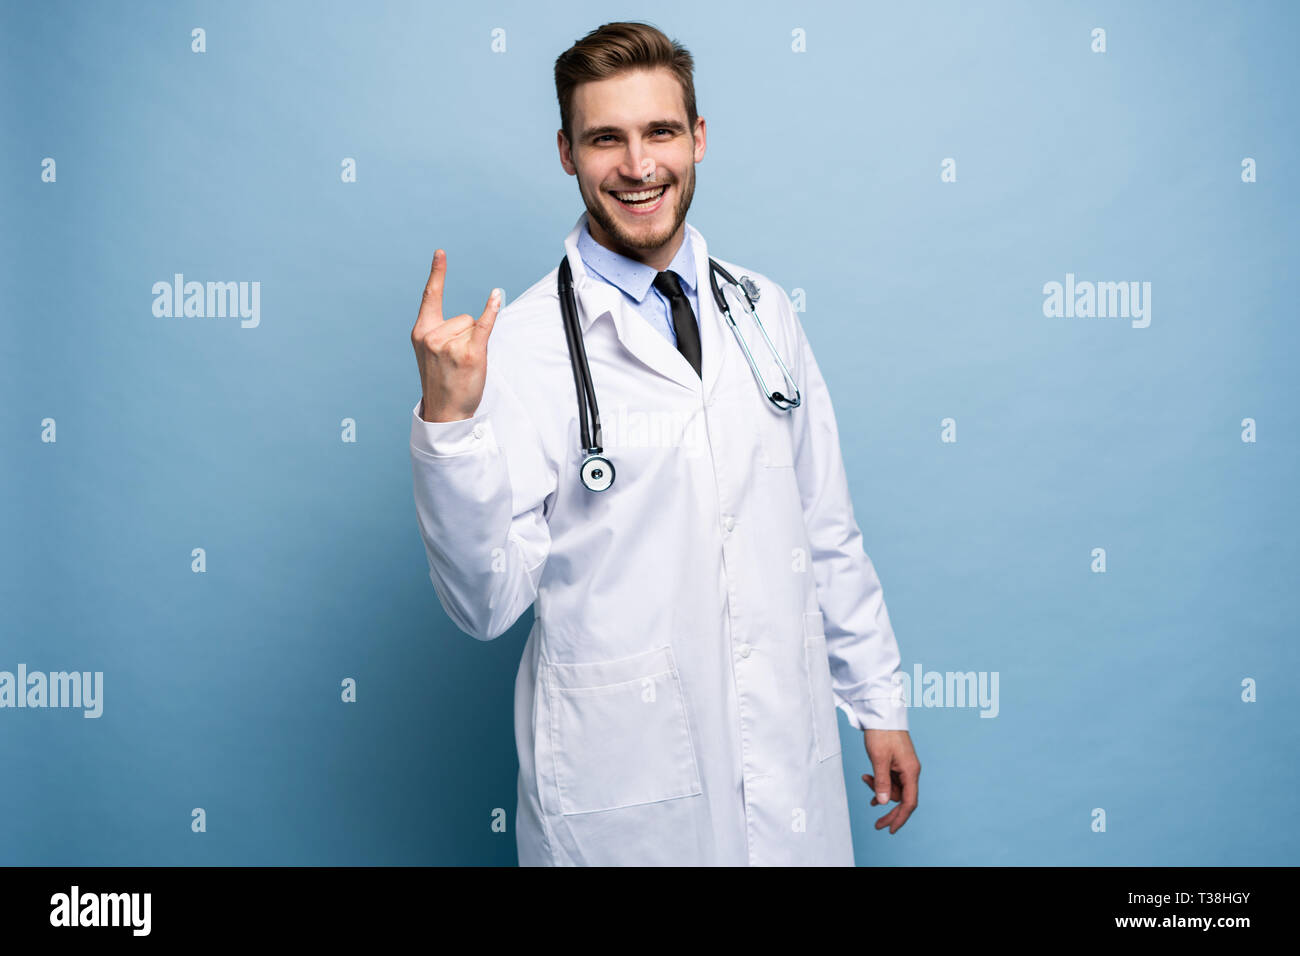 Chirurg Arzt Mann stolz und selbstbewusst in Liebe sich Konzept zufrieden isoliert auf Hellblau. Stockfoto